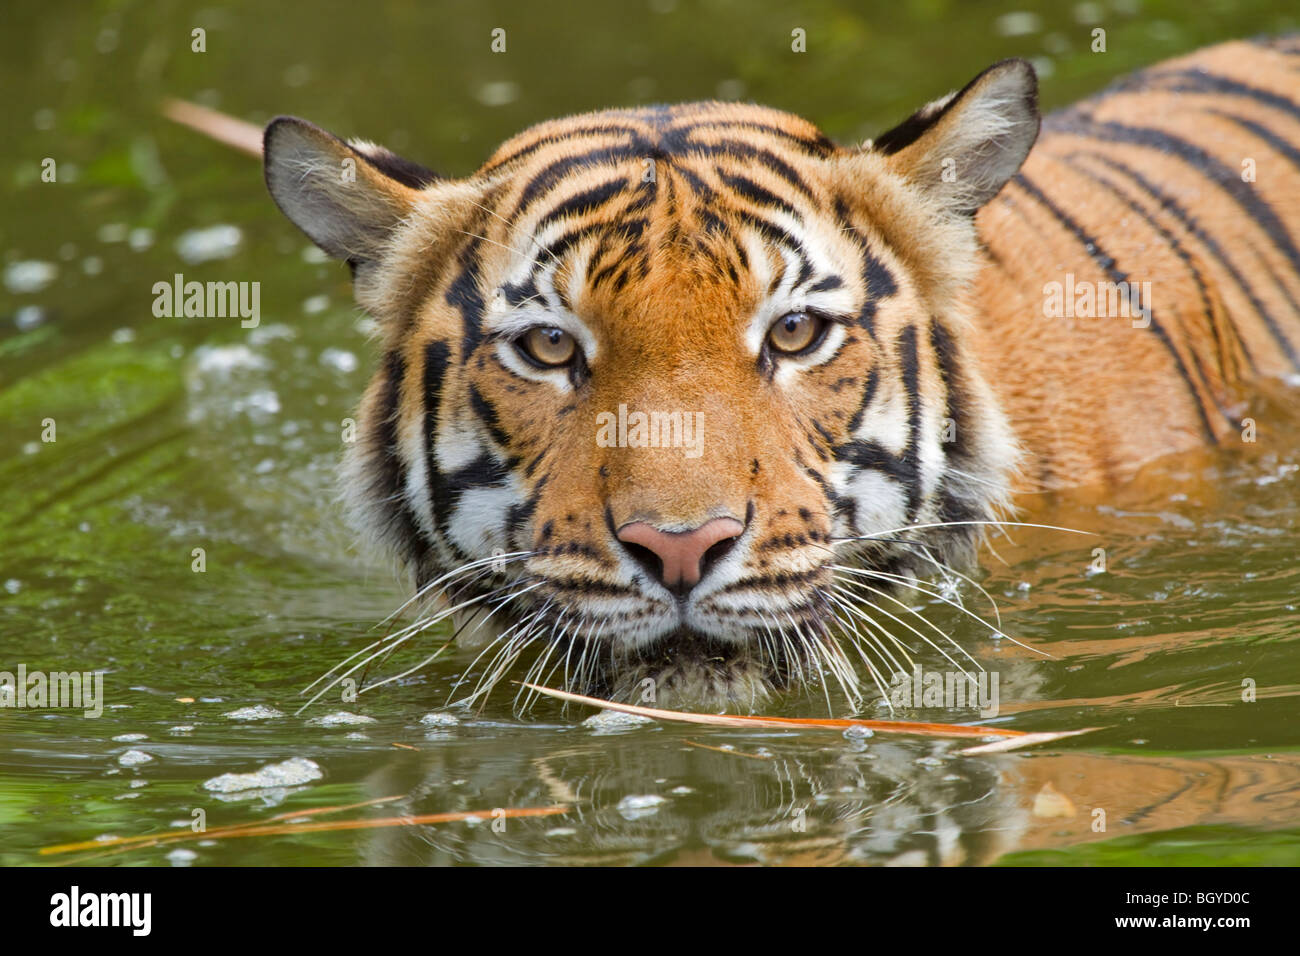 Sumatran tiger (Panthera tigris sumatrae) swimming. Stock Photo